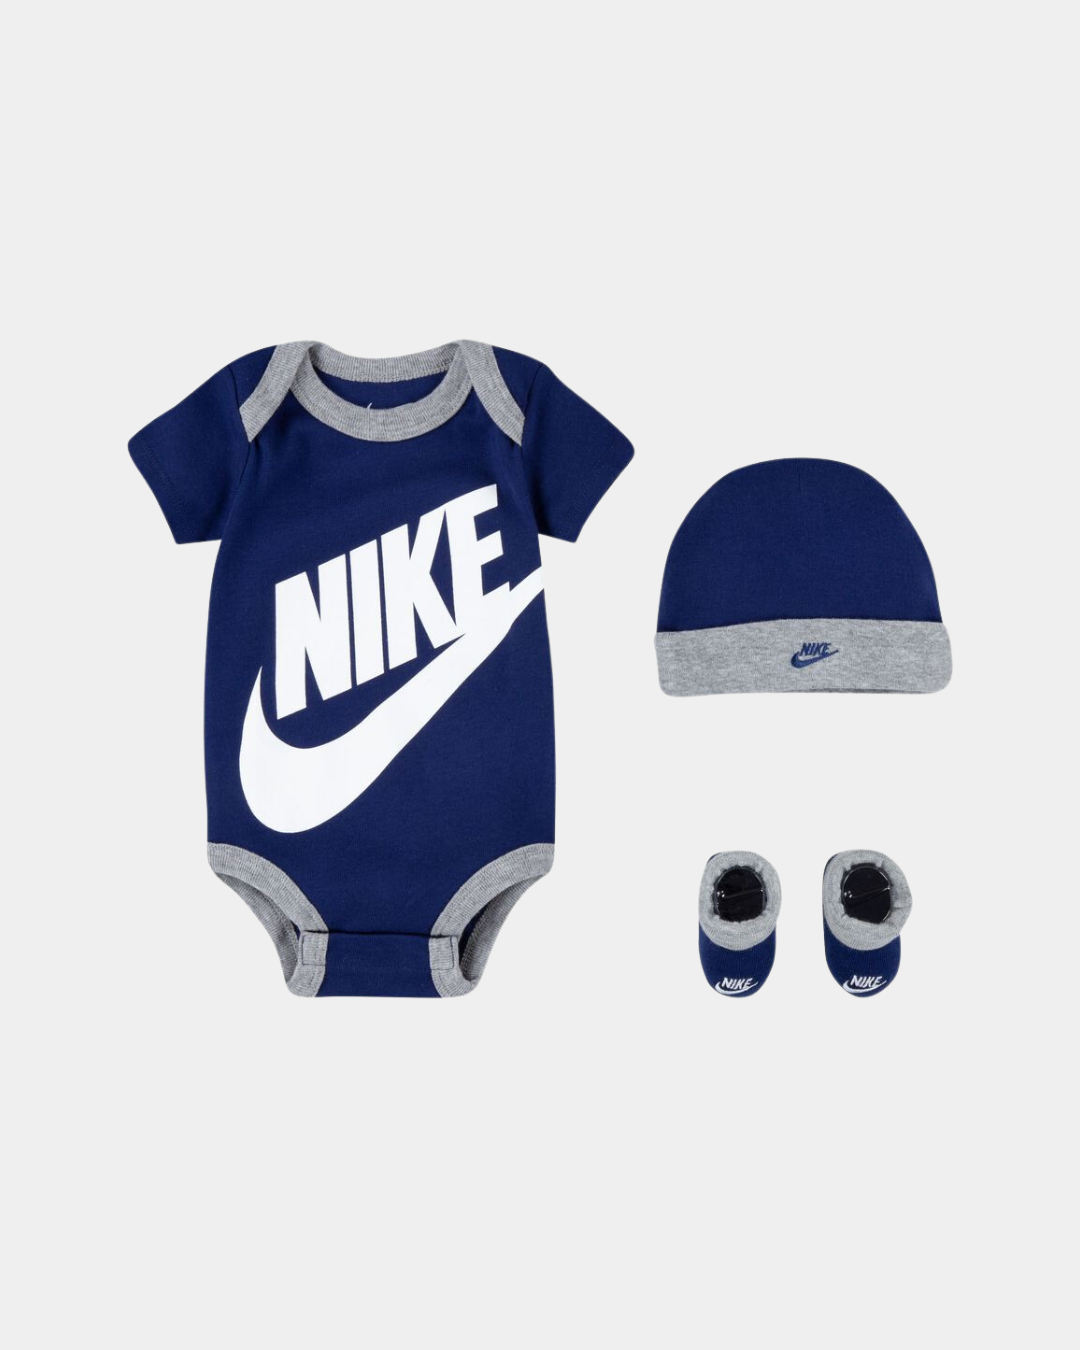 Nike Baby-Set – Blau/Grau/Weiß